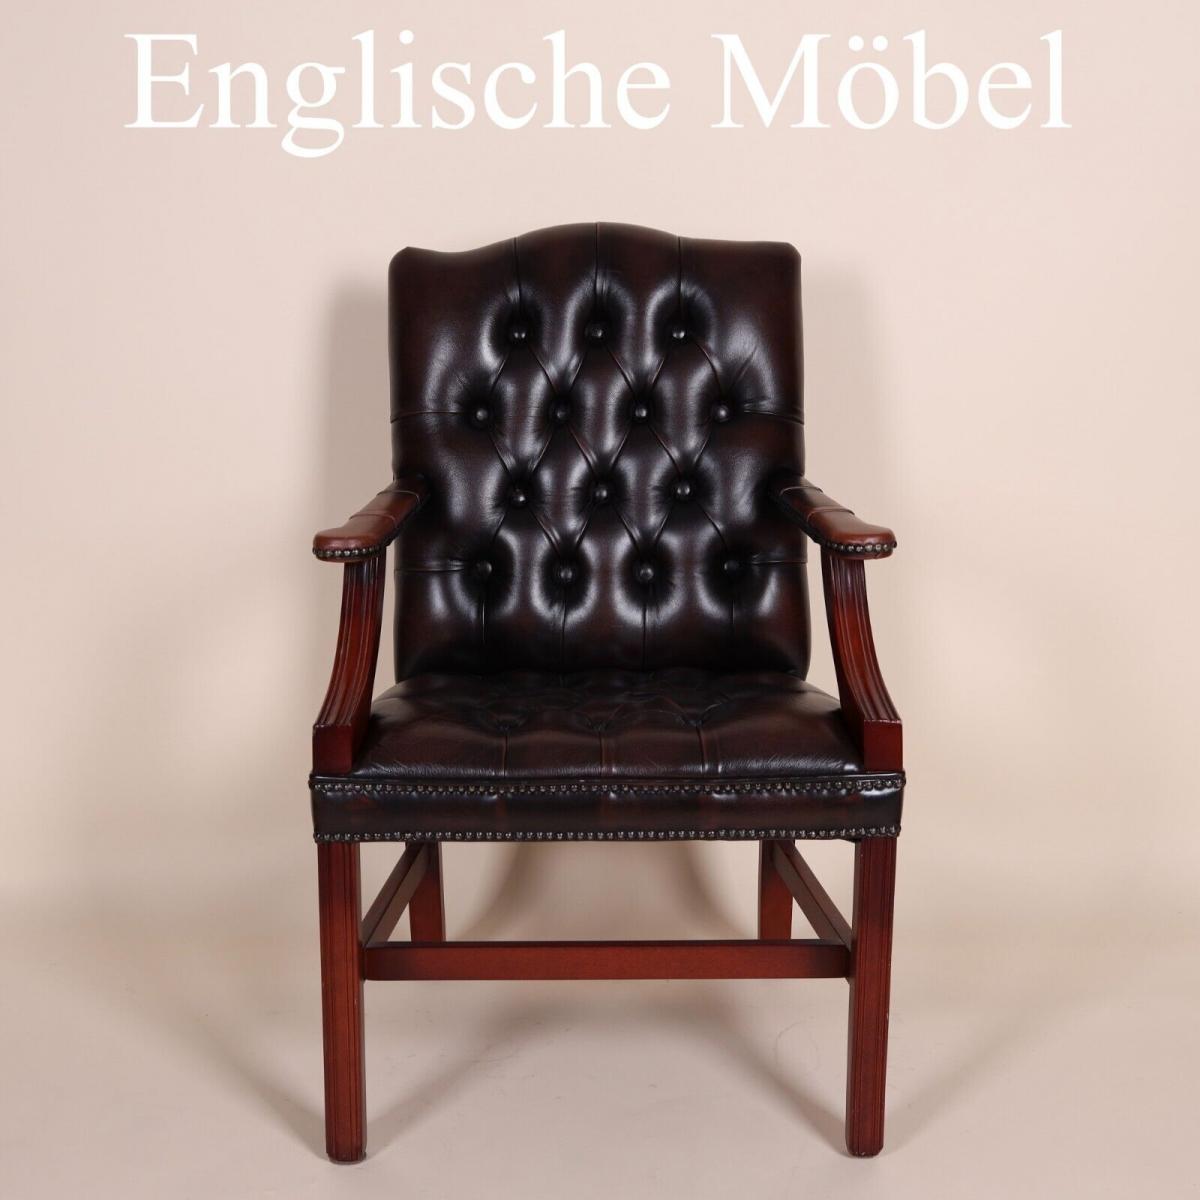 Englische M�bel Chesterfield Stuhl mit Armlehne Antik Leder in rotbraun Handmade 0